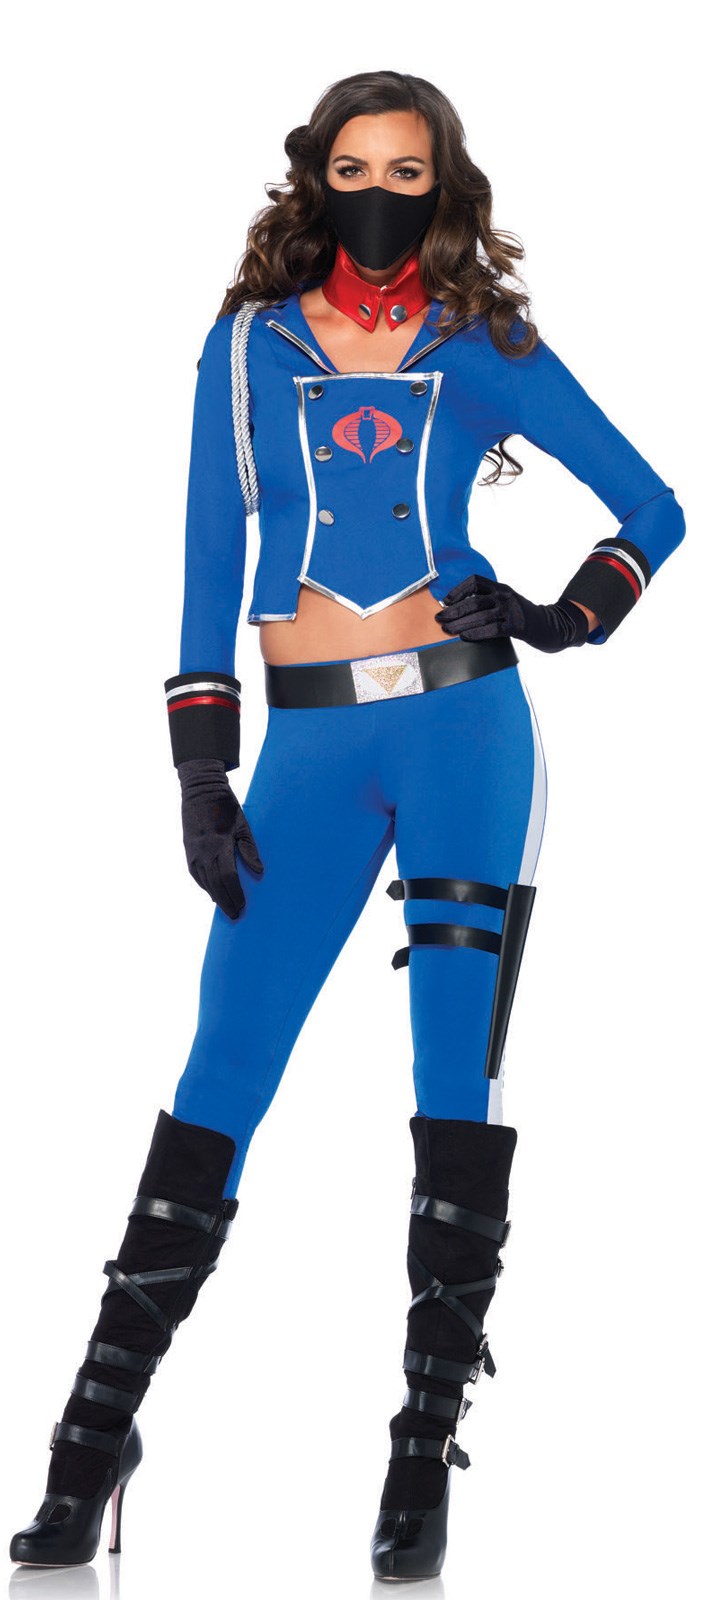 GI Joe - Cobra Girl Costume